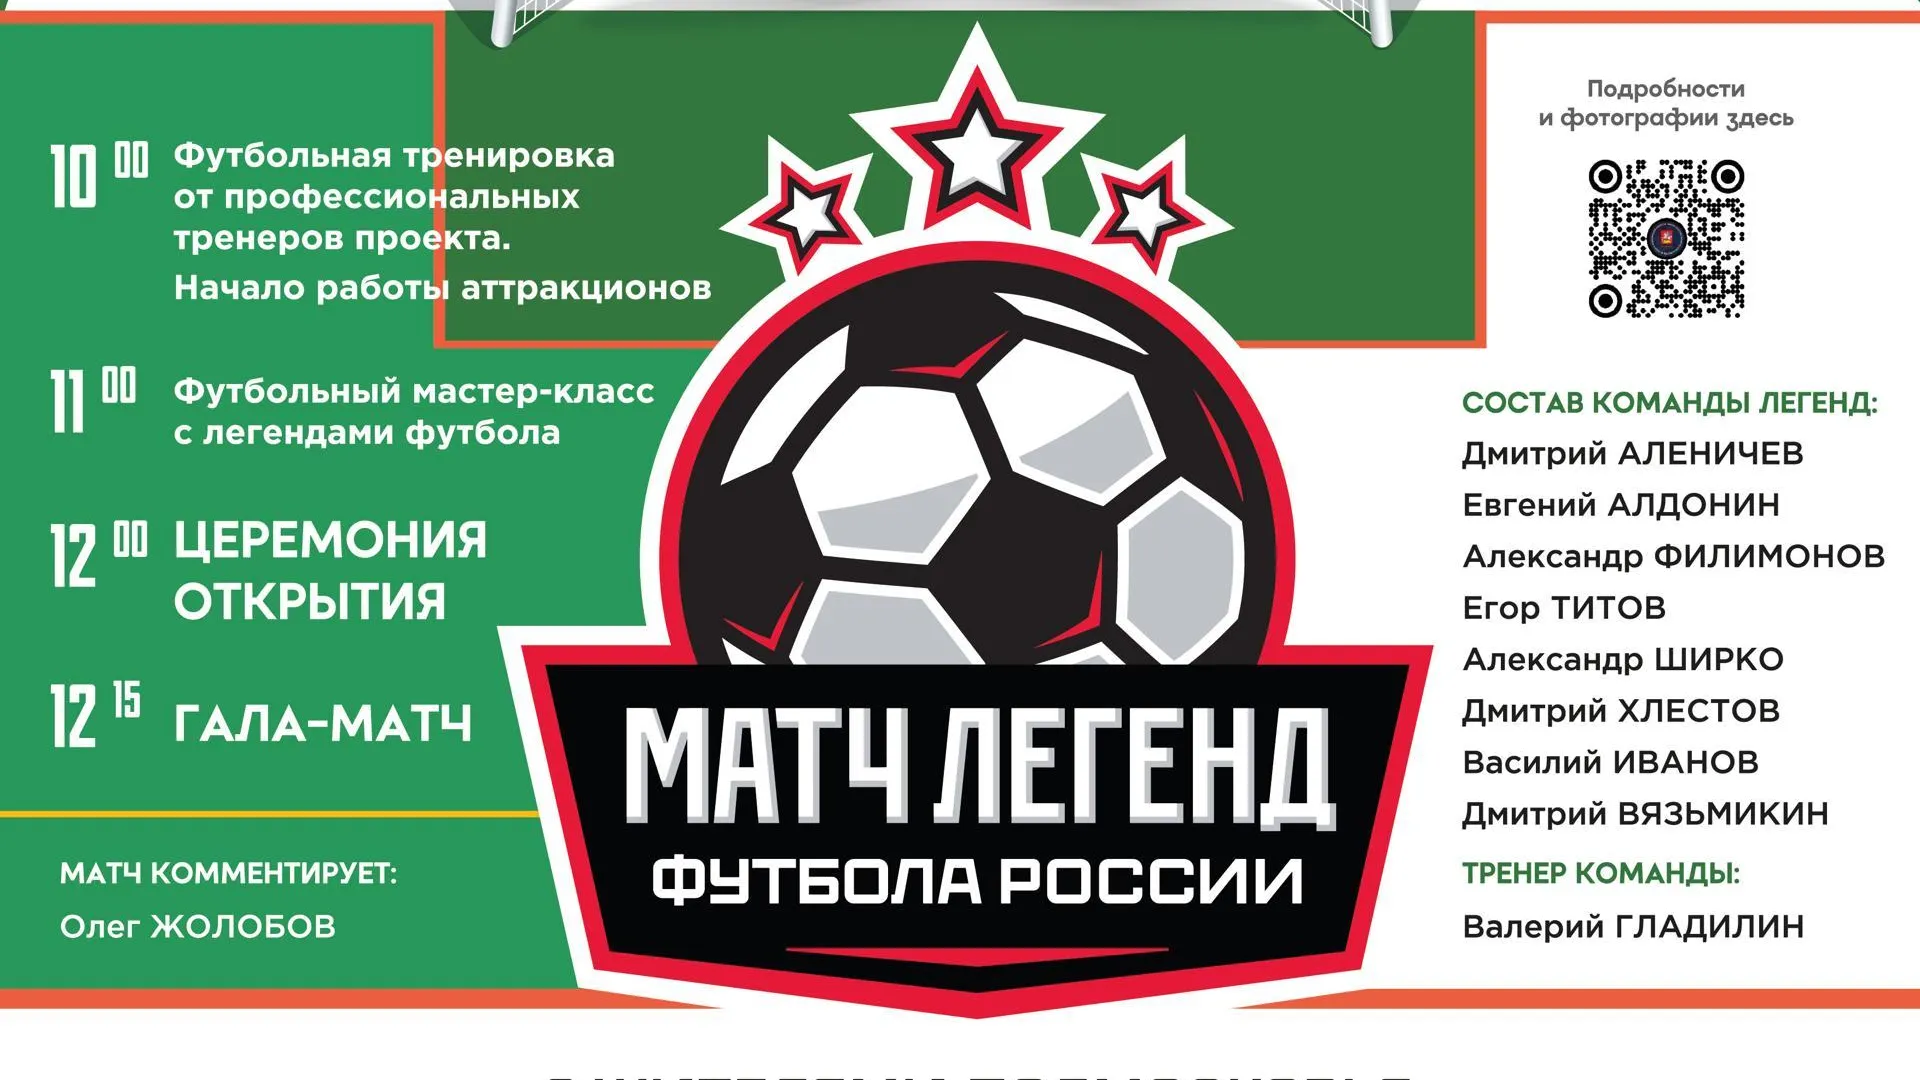 В Подольске 16 июня состоится матч легенд между жителями и звездами футбола